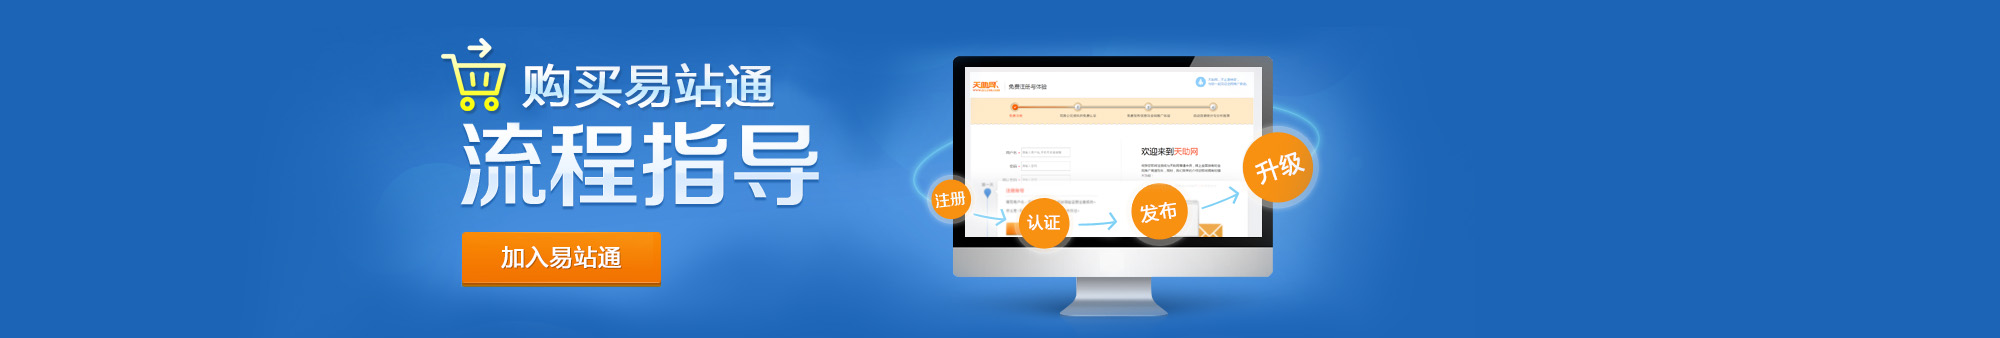 易站通,天津信息发布平台,天津免费发布B2B平台